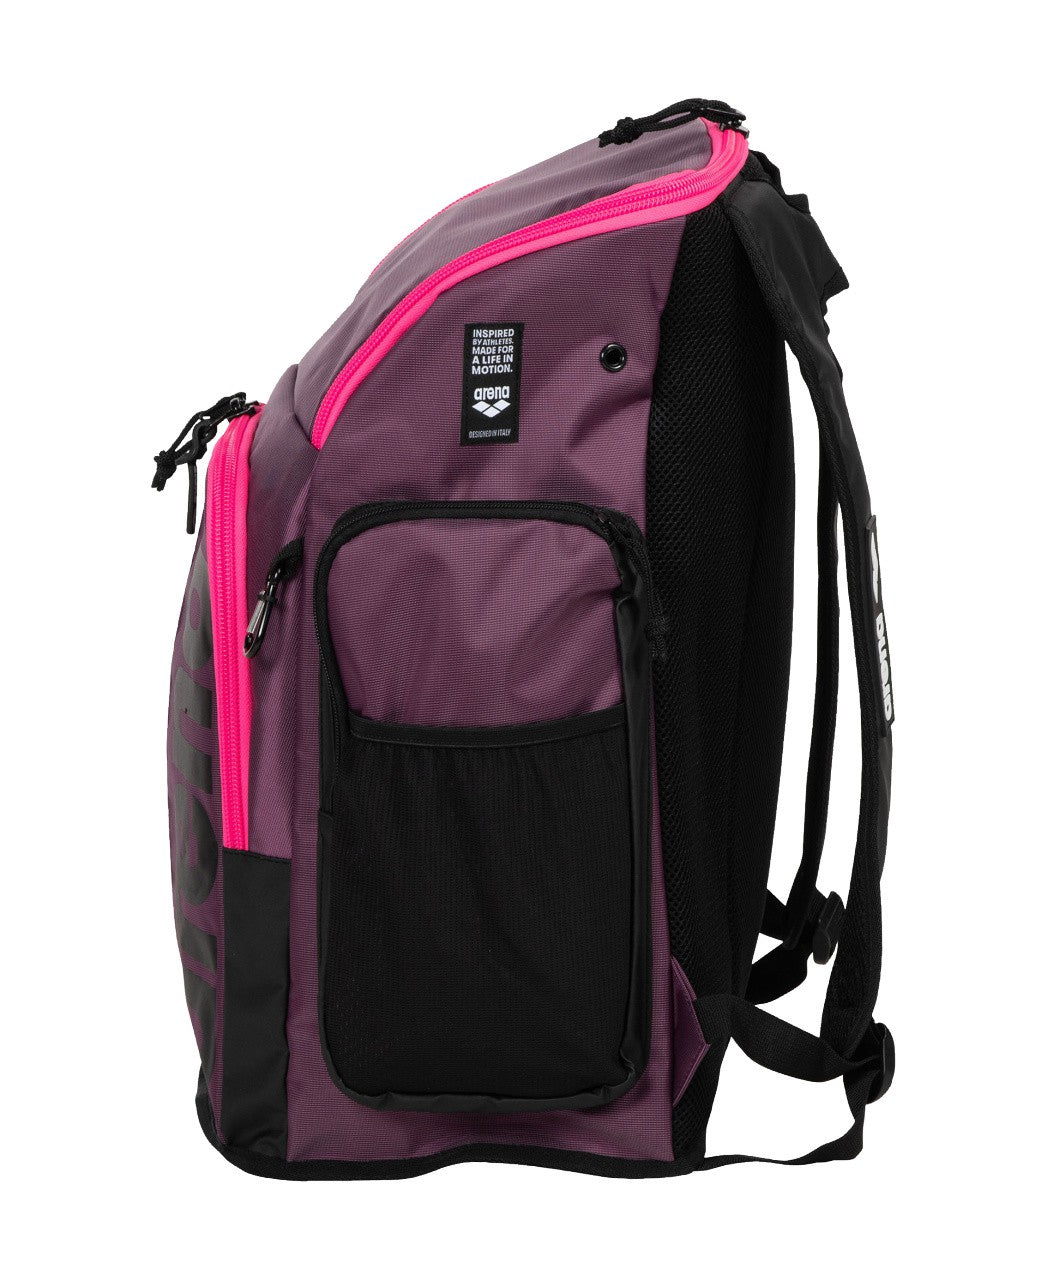 Spiky III Backpack 45 plum-neonpink